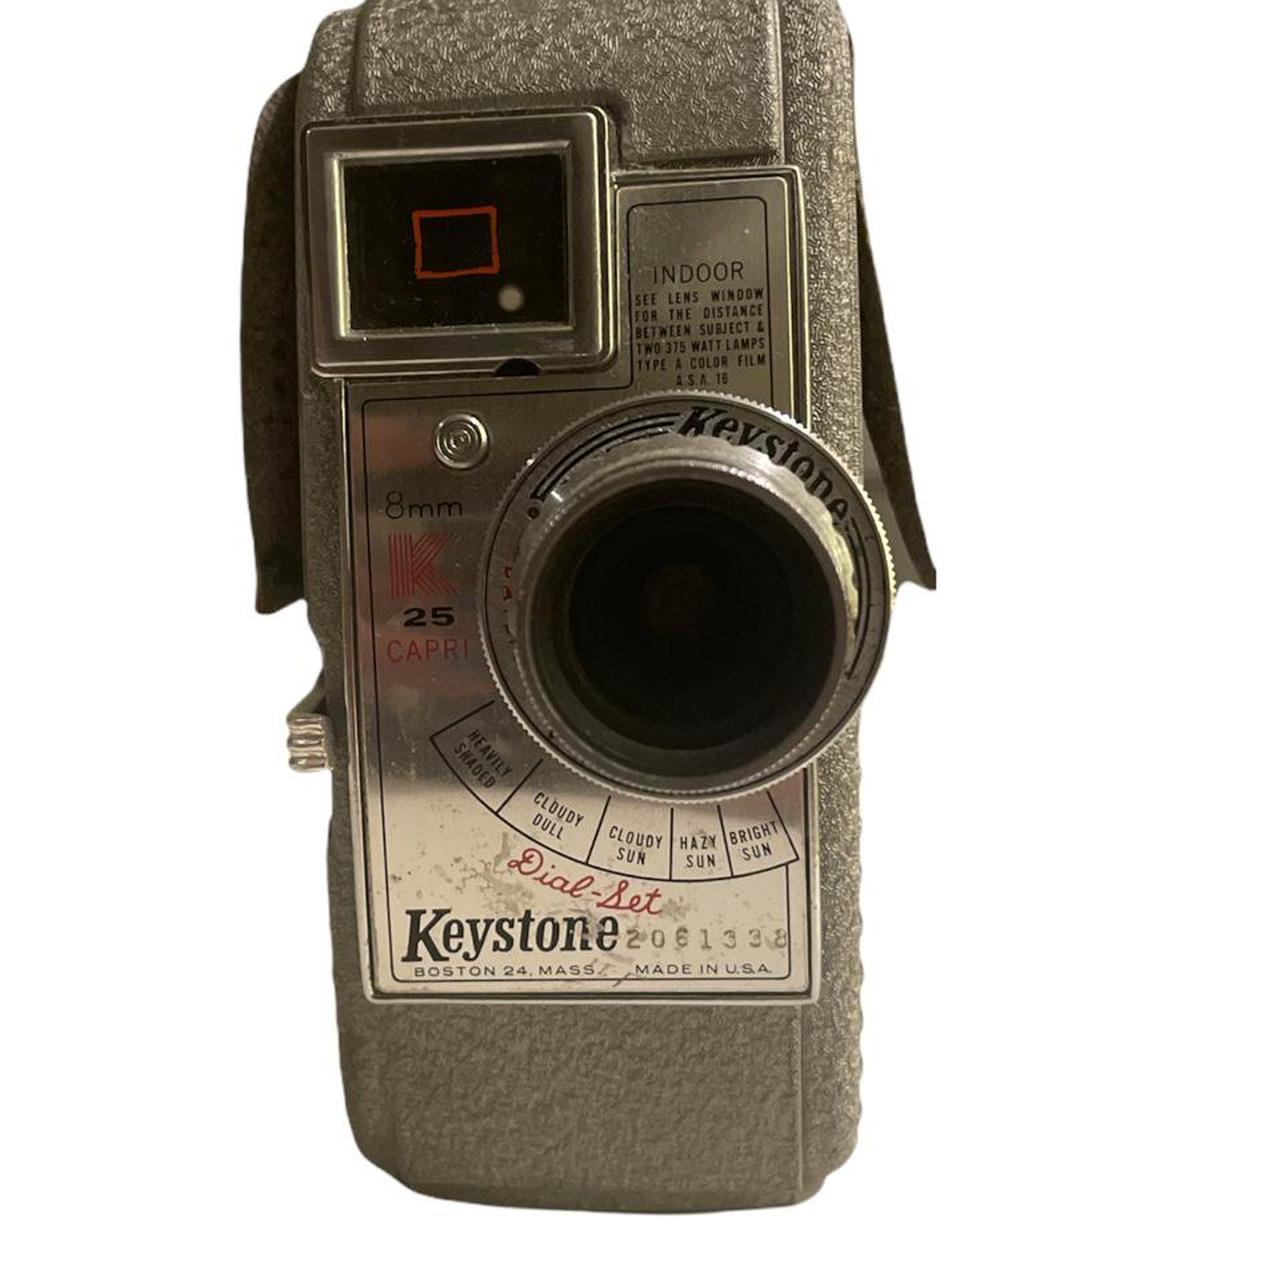 Product Image 1 - 8 mm Vintage Keystone Camera